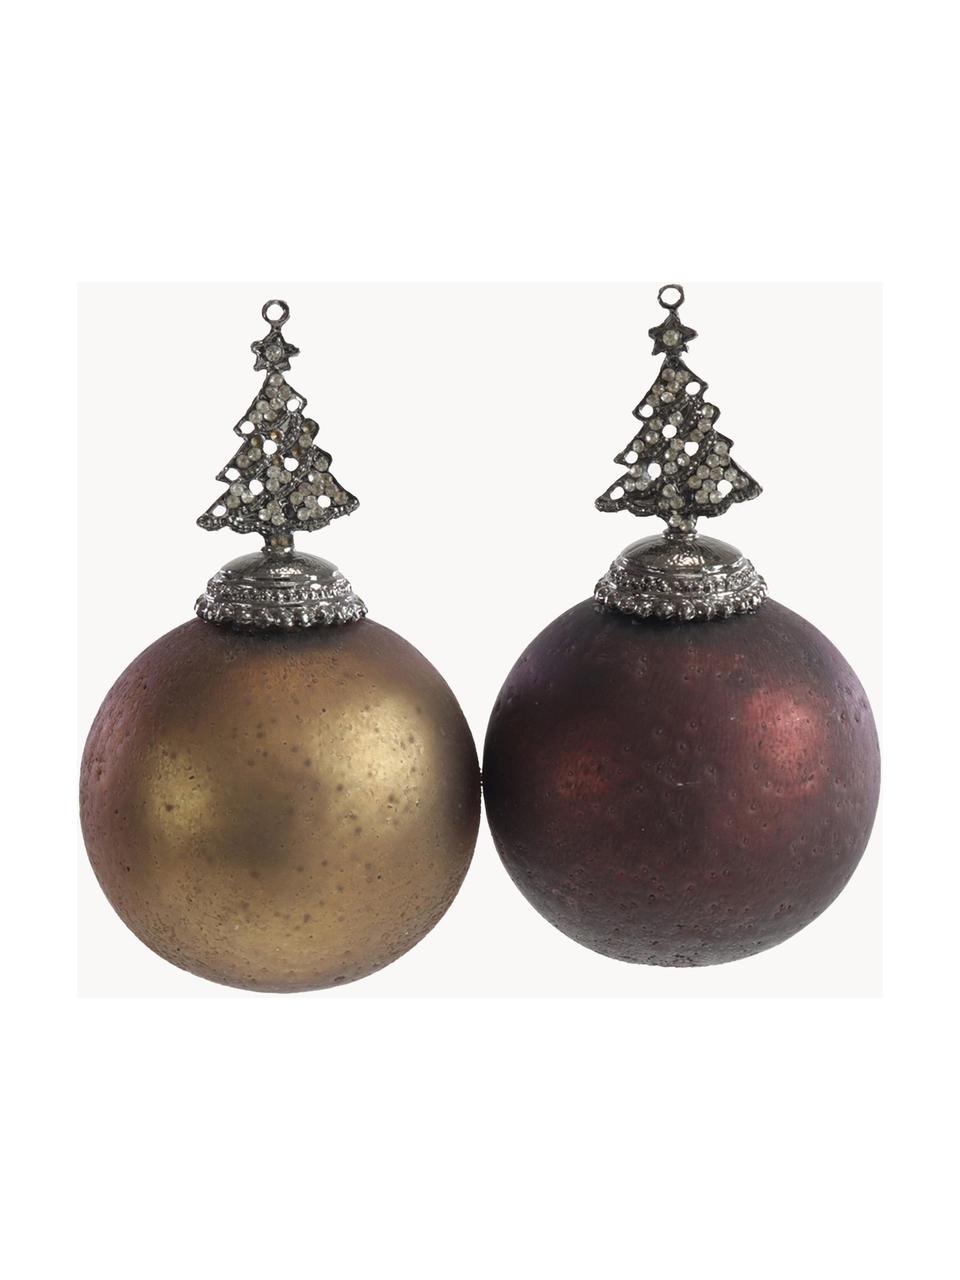 Kerstballen Tree, 2 stuks, Bruin, koperkleurig, zilverkleurig, Ø 8 x H 13 cm